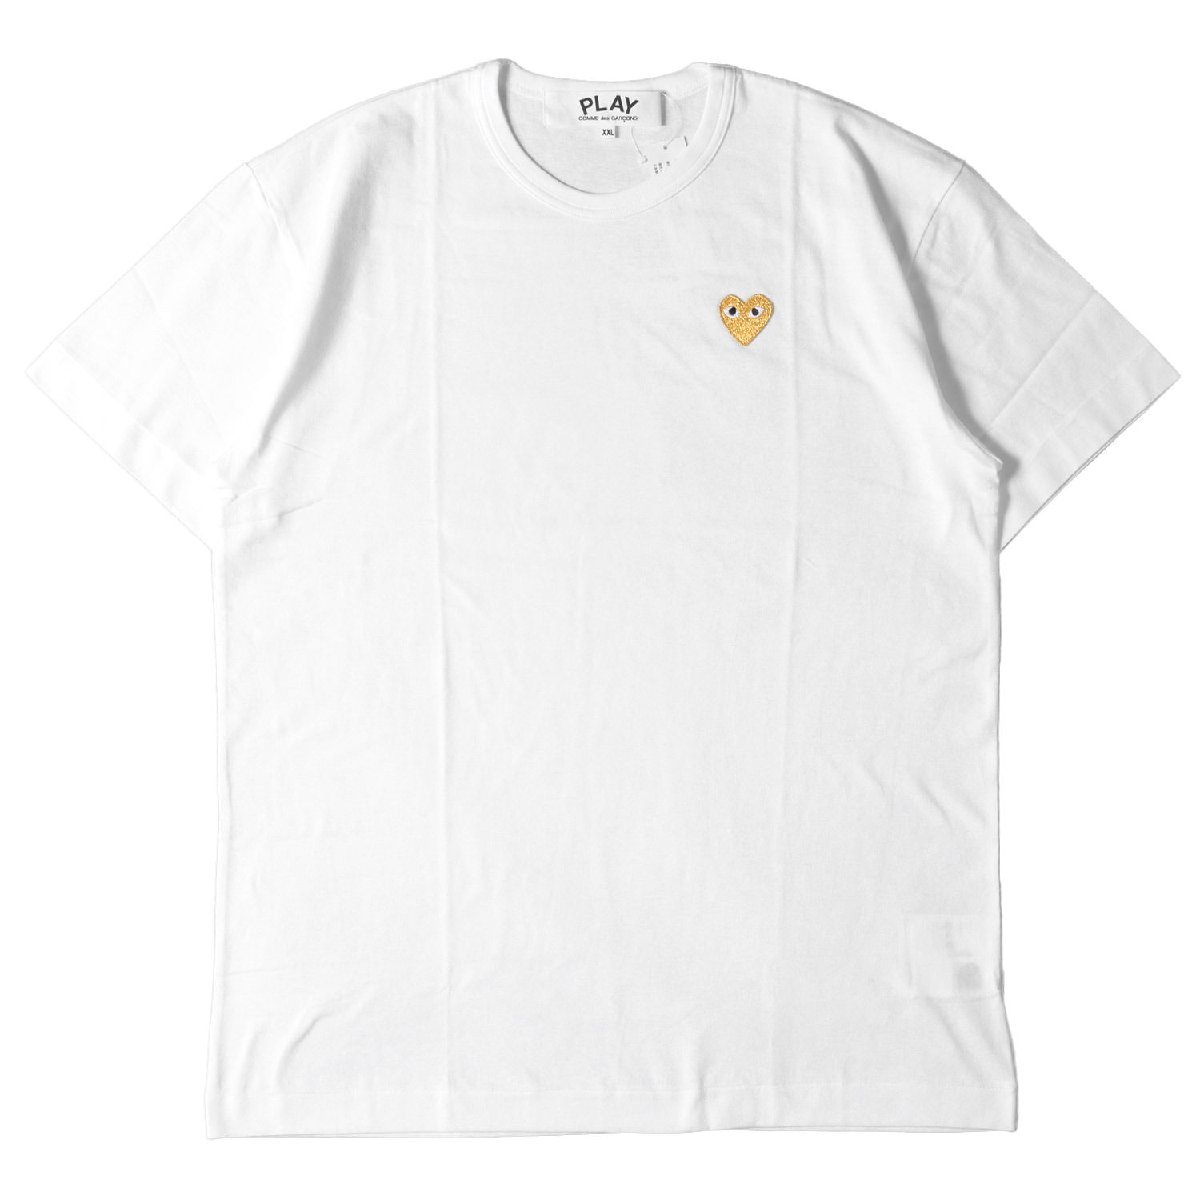 COMME des GARCONS コムデギャルソン Tシャツ サイズ:XXL ゴールド ハート ワッペン AZ-T216 AD2020 PLAY ホワイト トップス カットソー